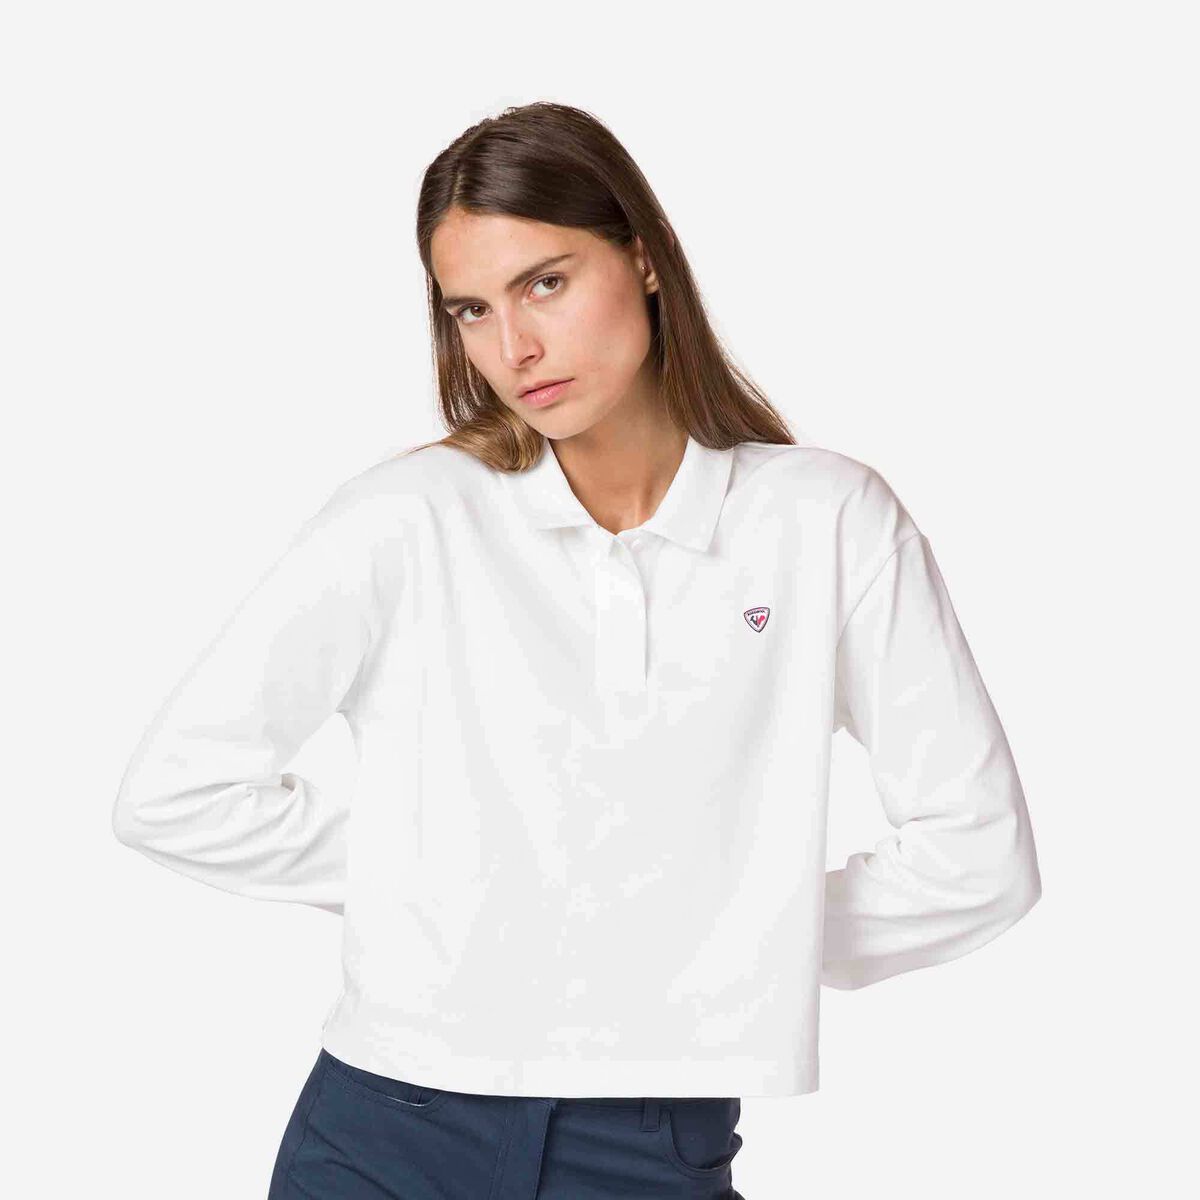 Women's cropped polo shirt